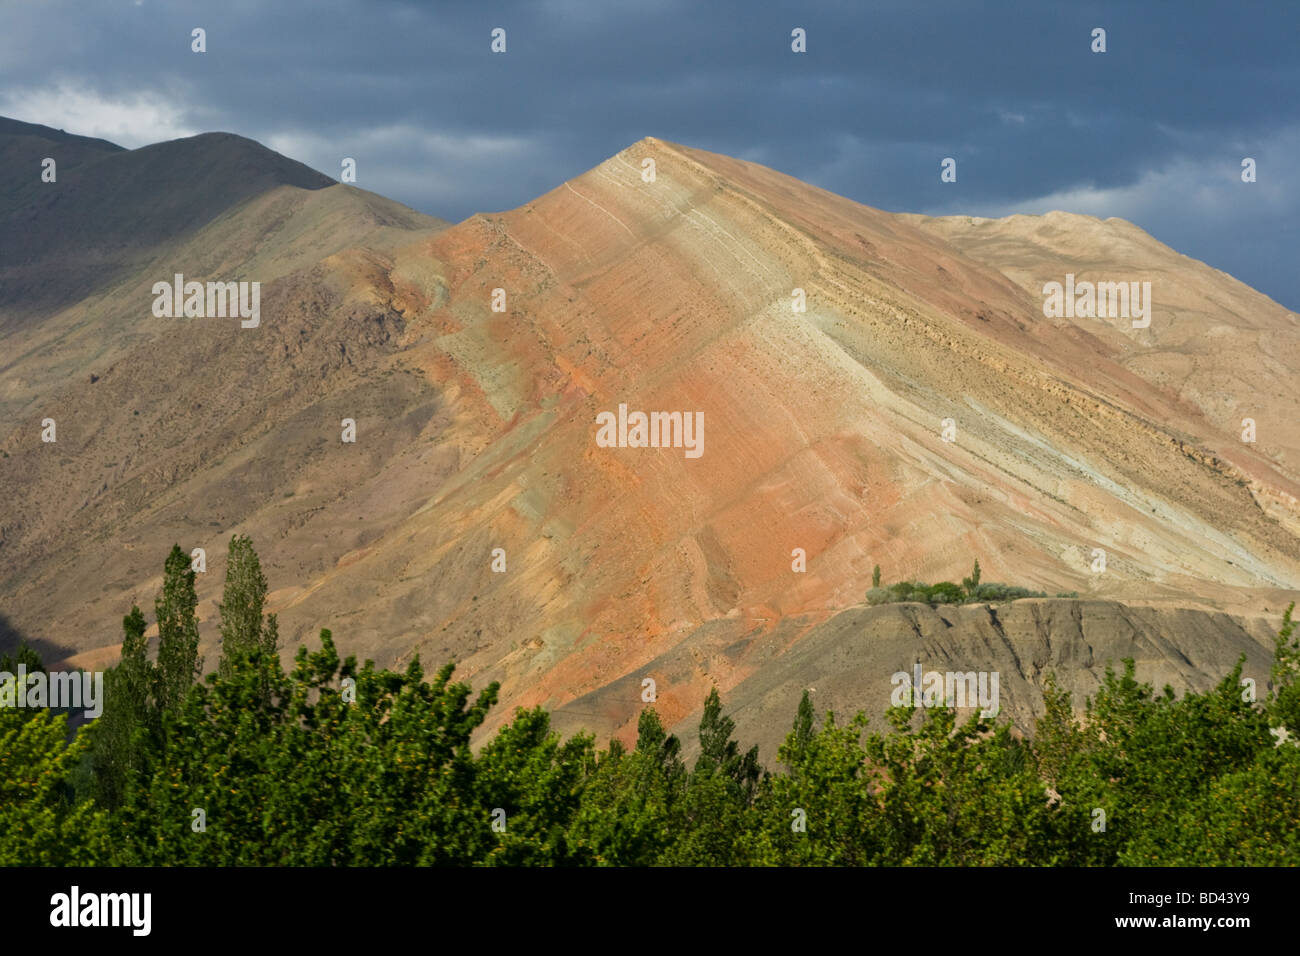 Mountain Scenery near the Town of Aini in Tajikistan Stock Photo